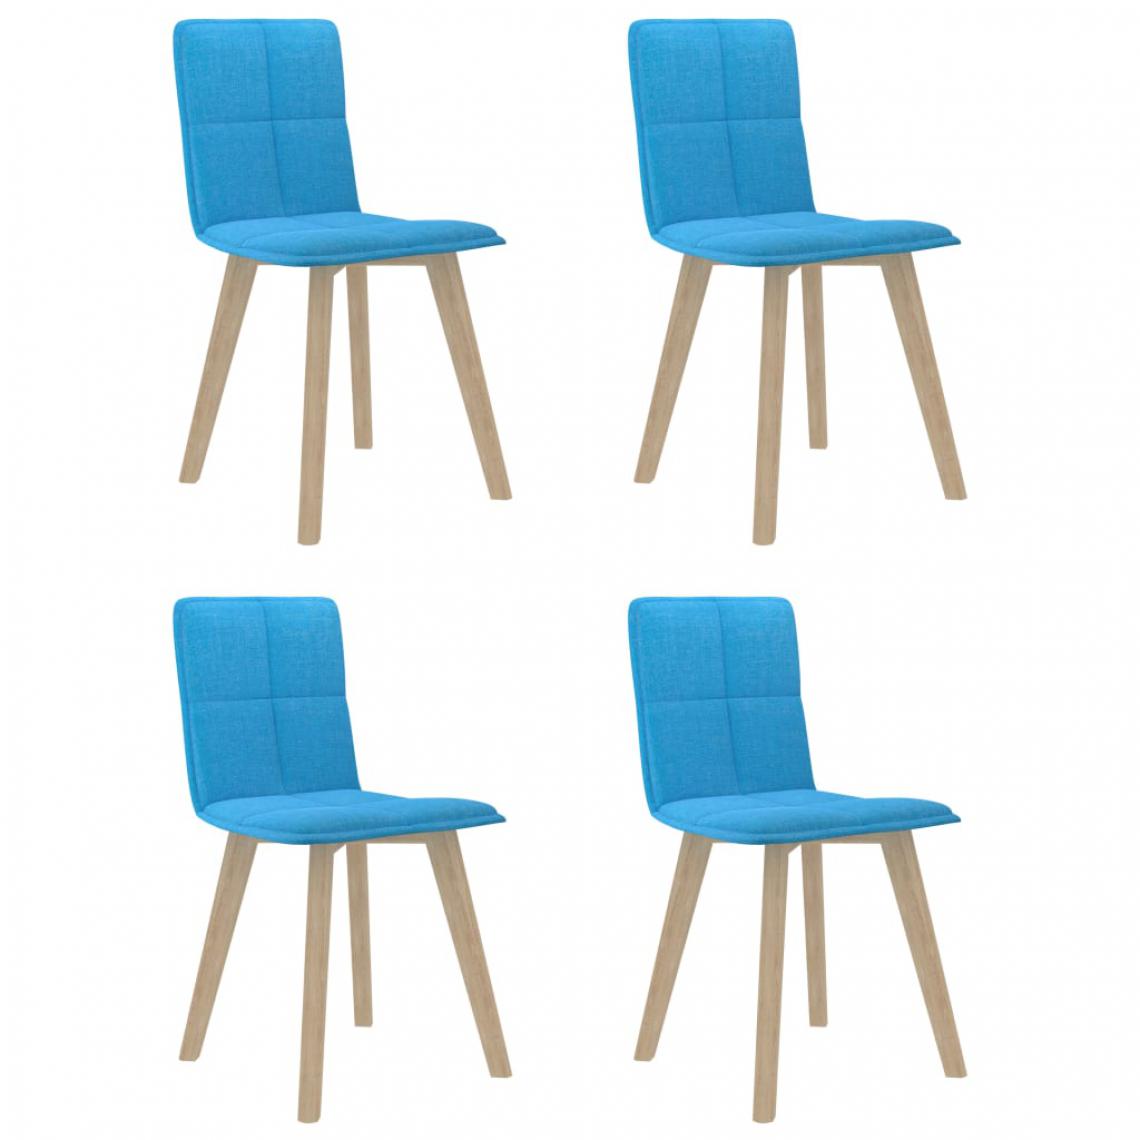 Icaverne - Contemporain Fauteuils et chaises collection Honiara Chaises de salle à manger 4 pcs Bleu Tissu - Chaises